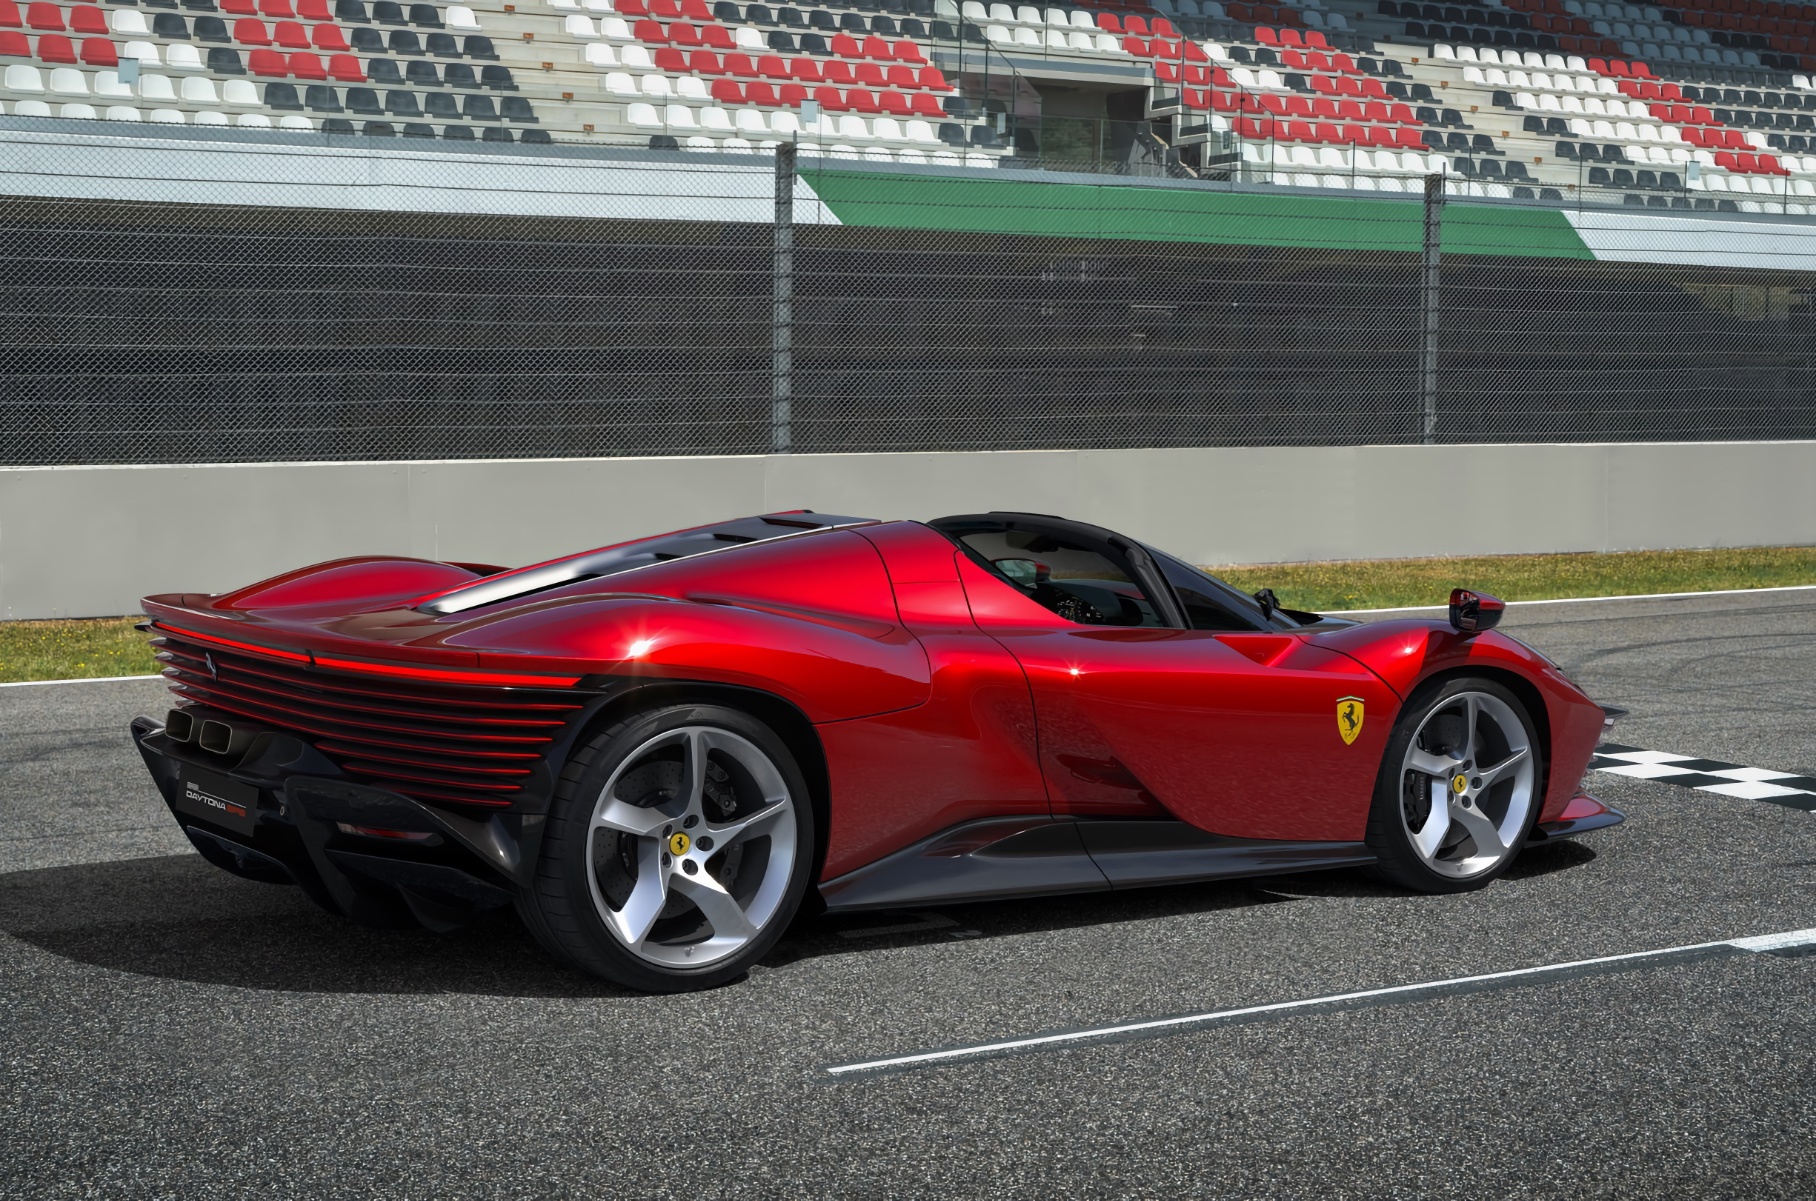 Ferrari Daytona 2022